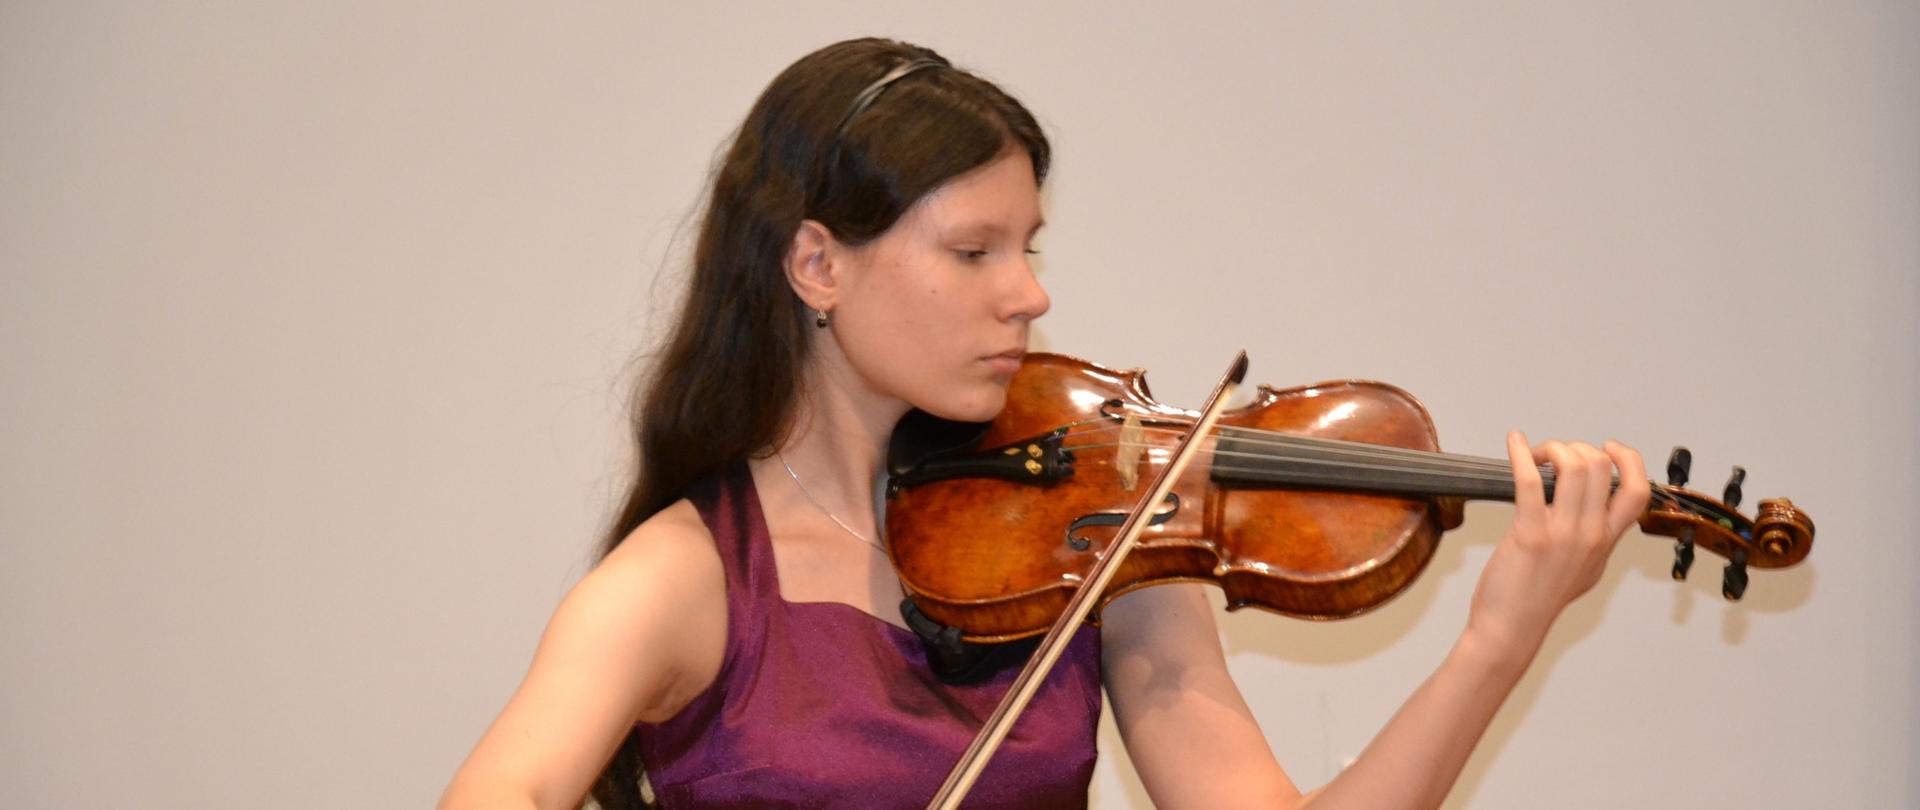 Alicja jabłońska podczas solowego koncertu w Sali Królewskiej PSM w Mielcu